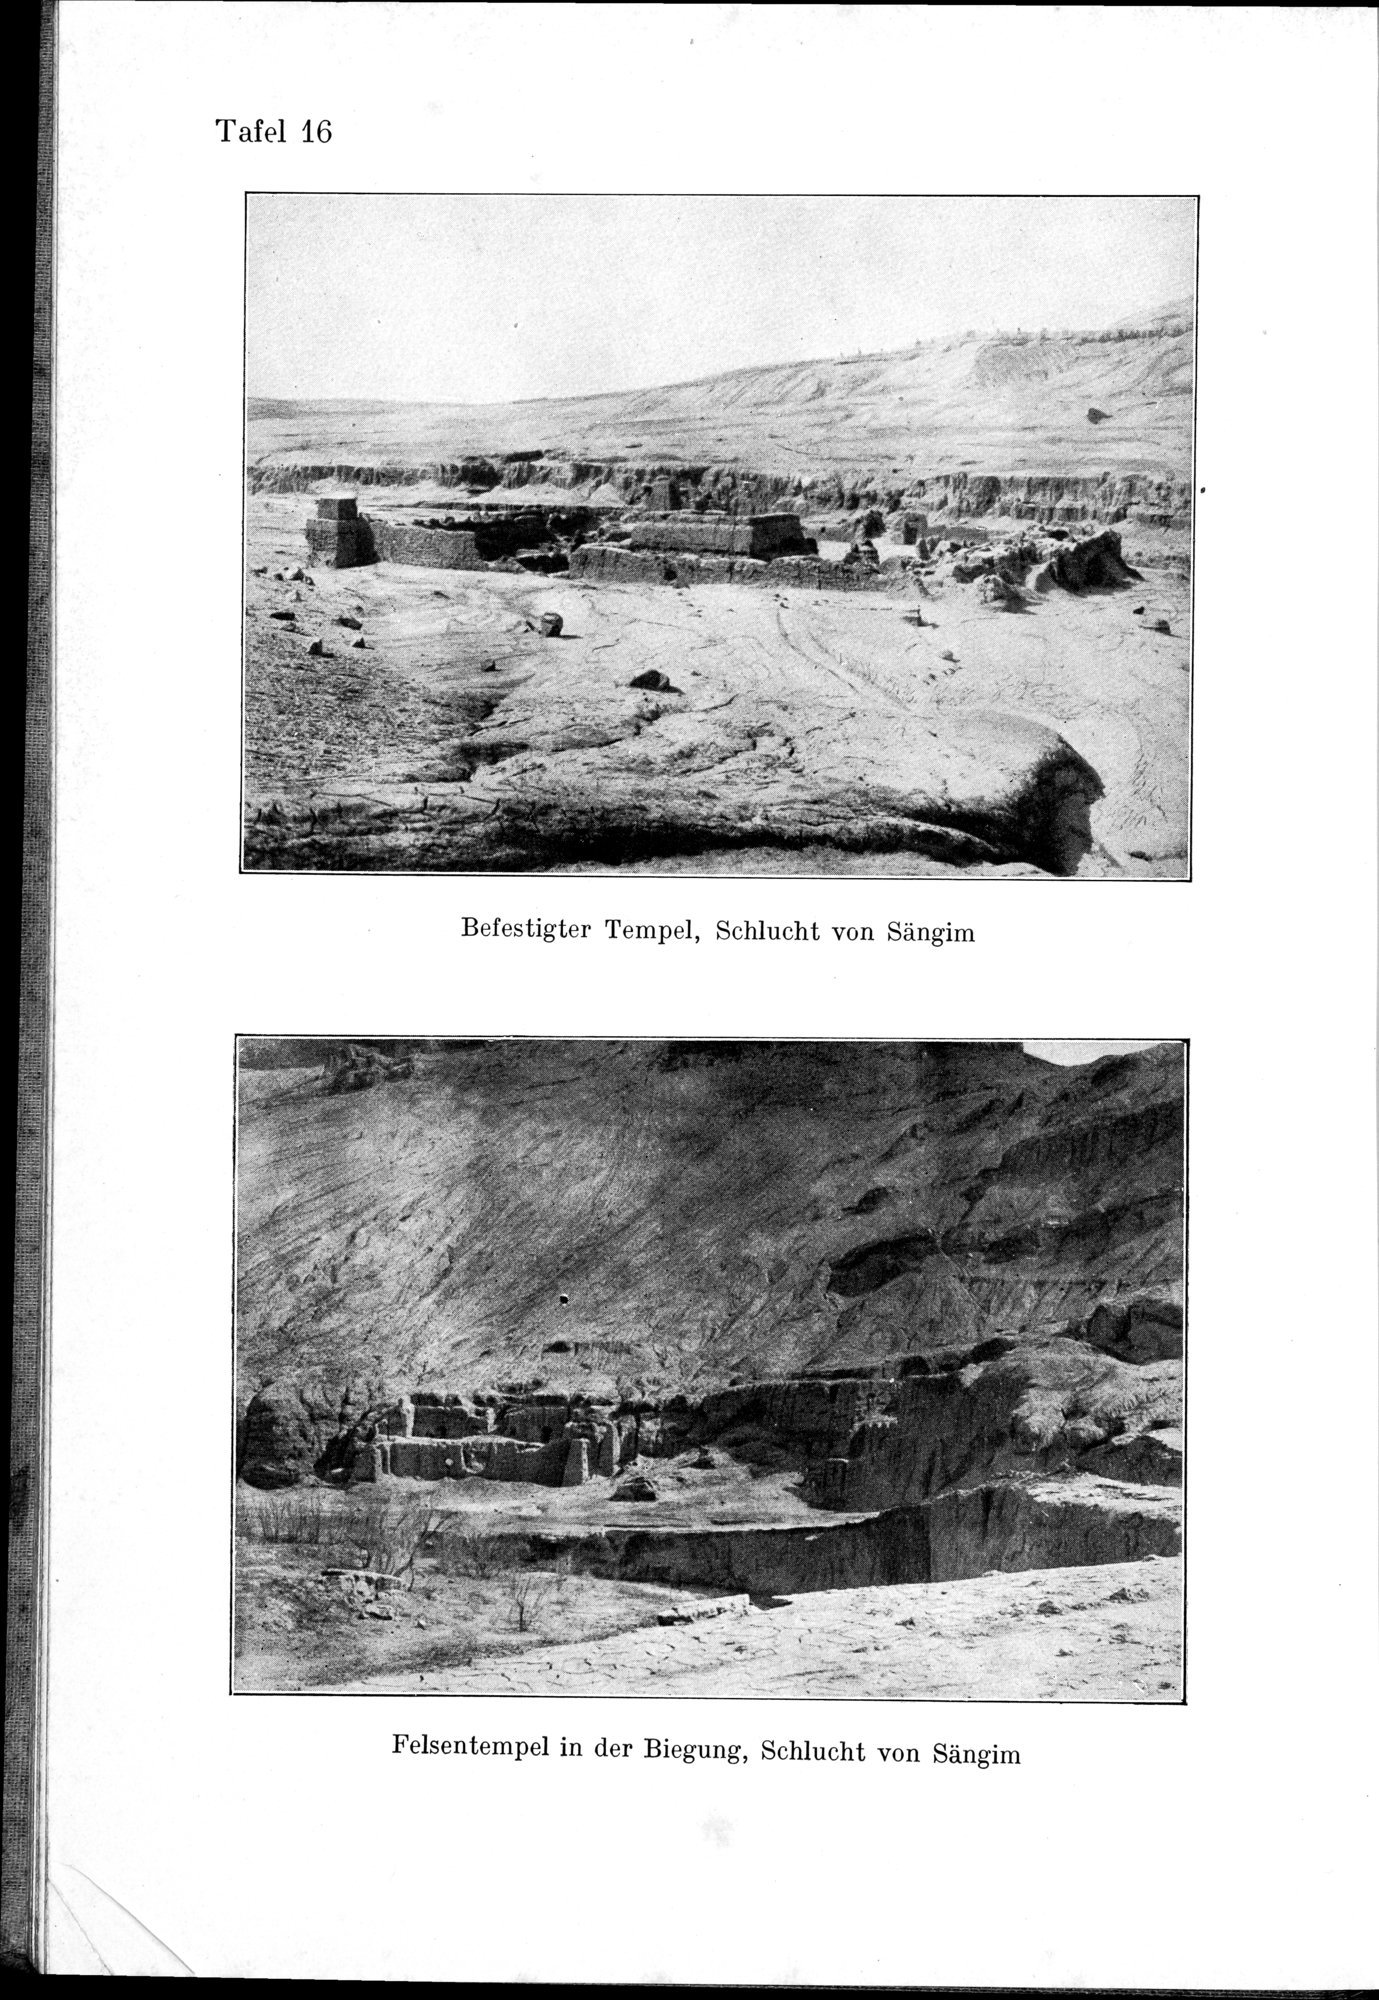 Auf Hellas Spuren in Ostturkistan : vol.1 / Page 88 (Grayscale High Resolution Image)